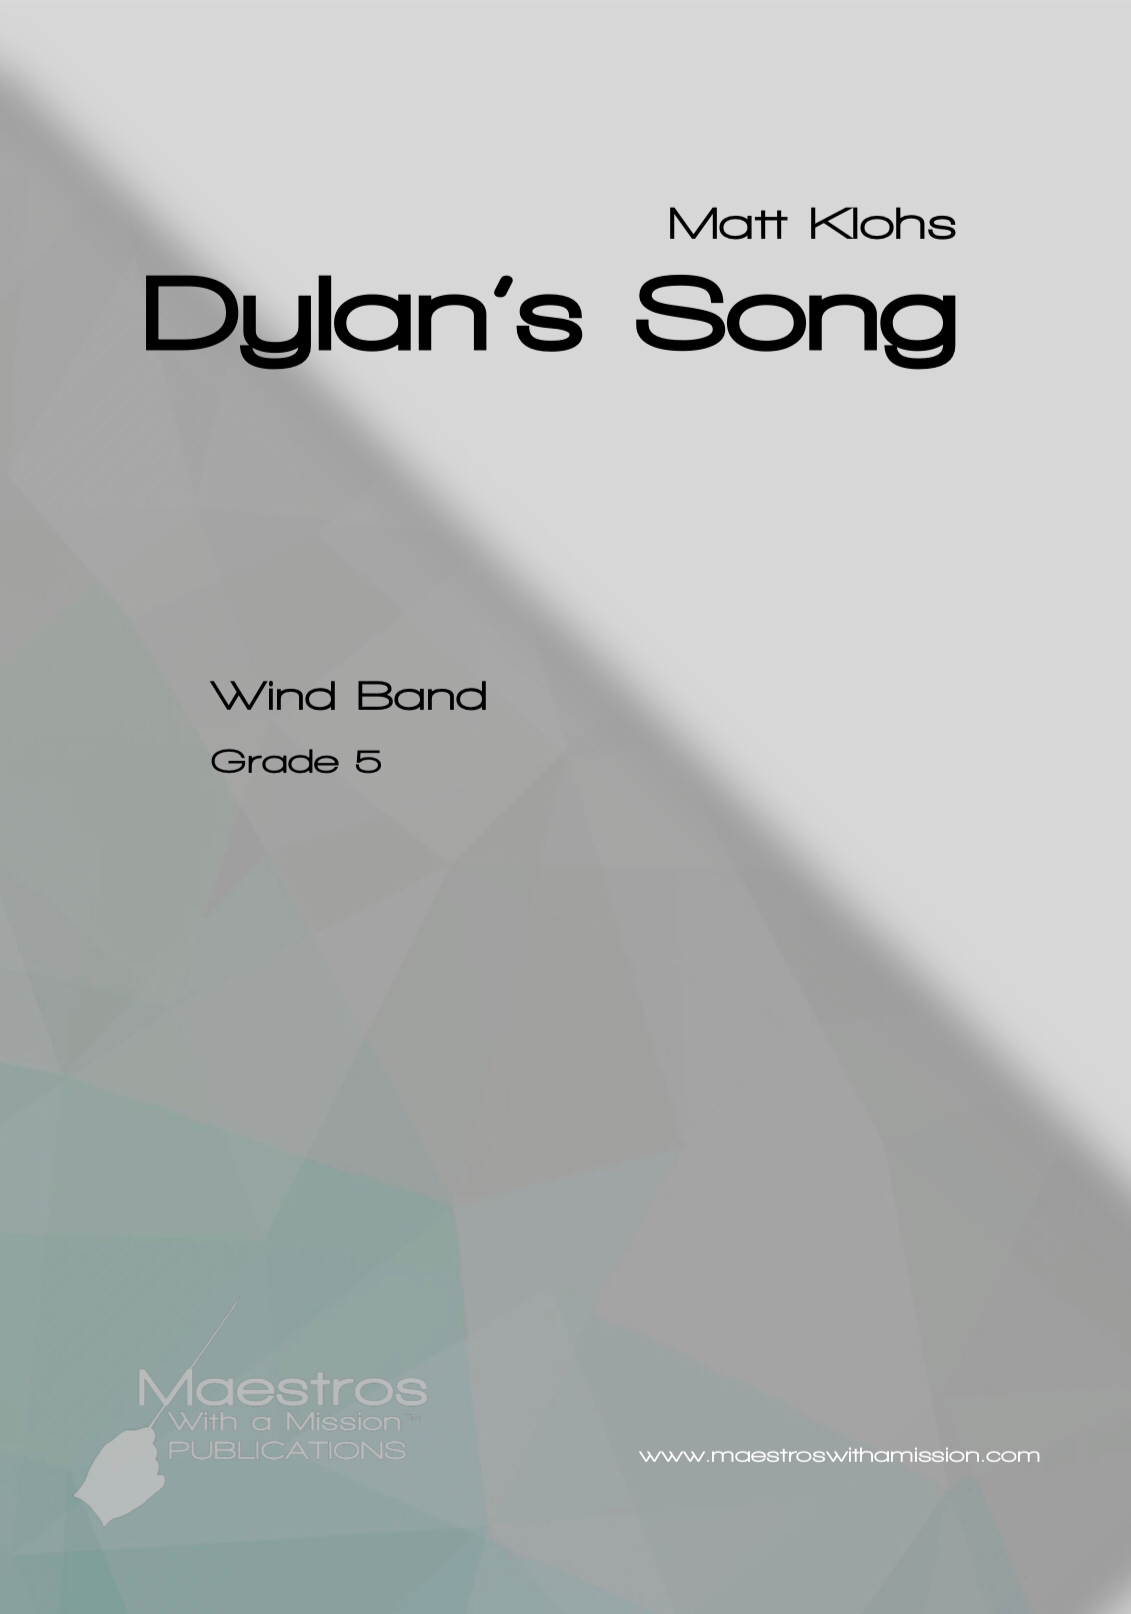 Dylan's Song by Matt Klohs